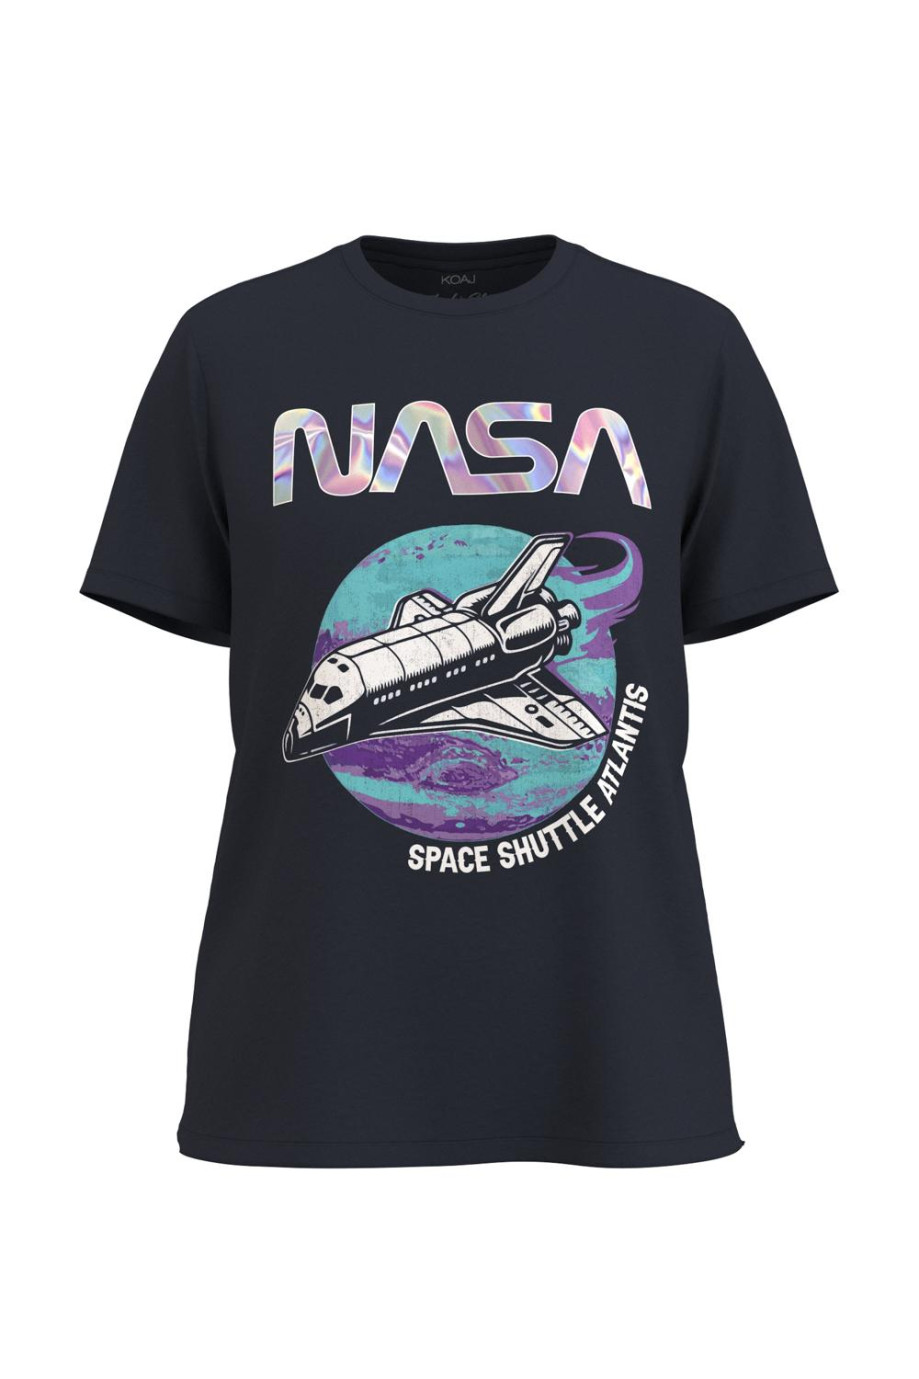 Camiseta manga corta de NASA Space shuttle